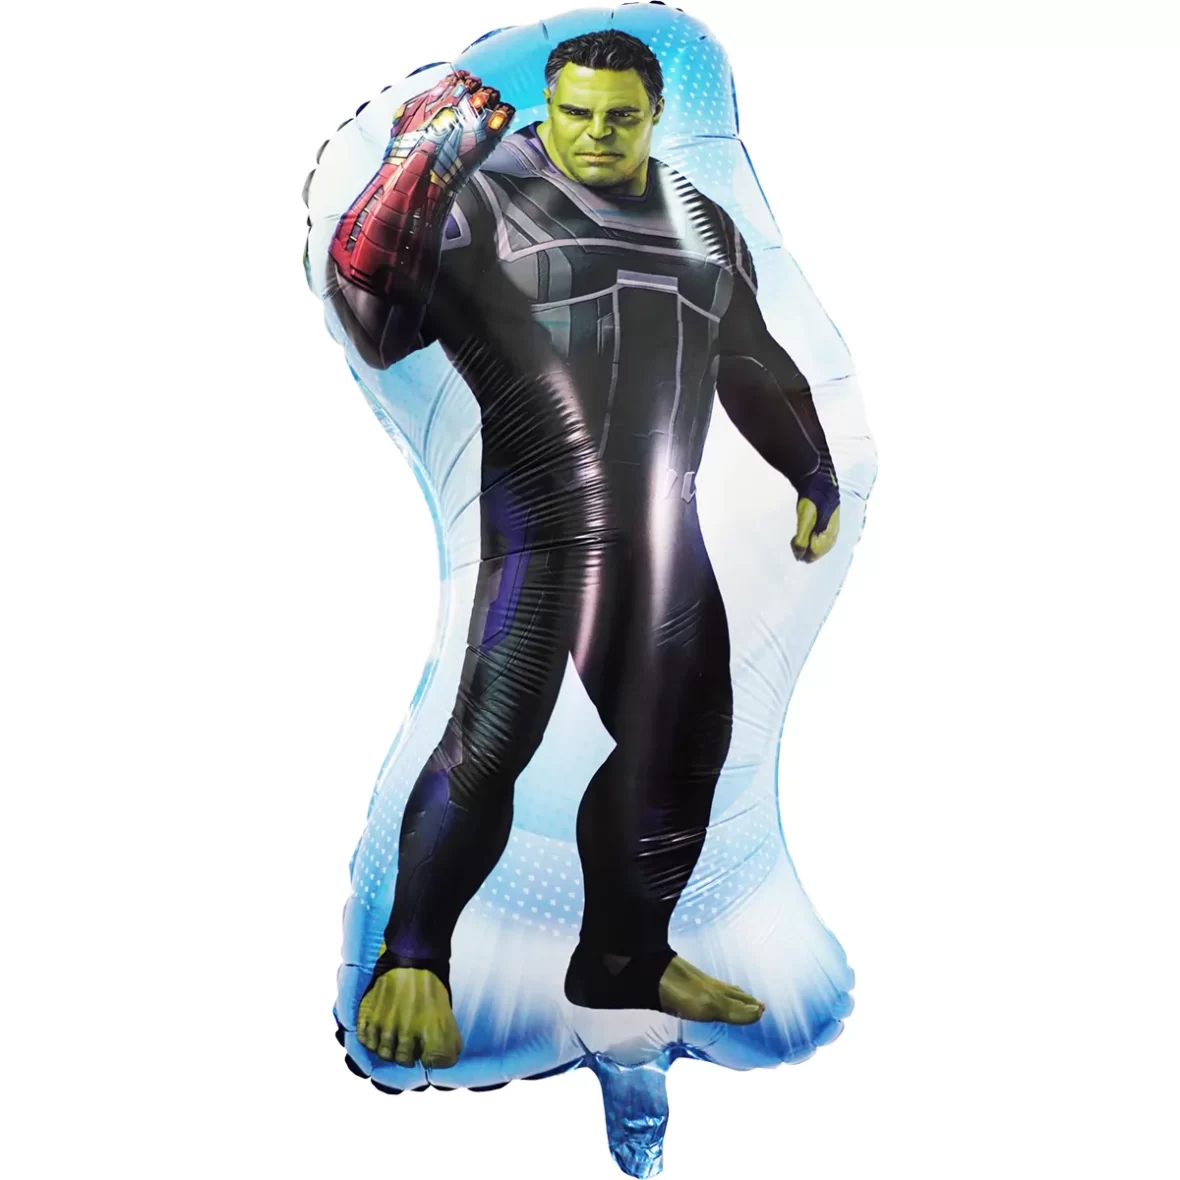 Balon figurina Hulk 60 x 28 cm